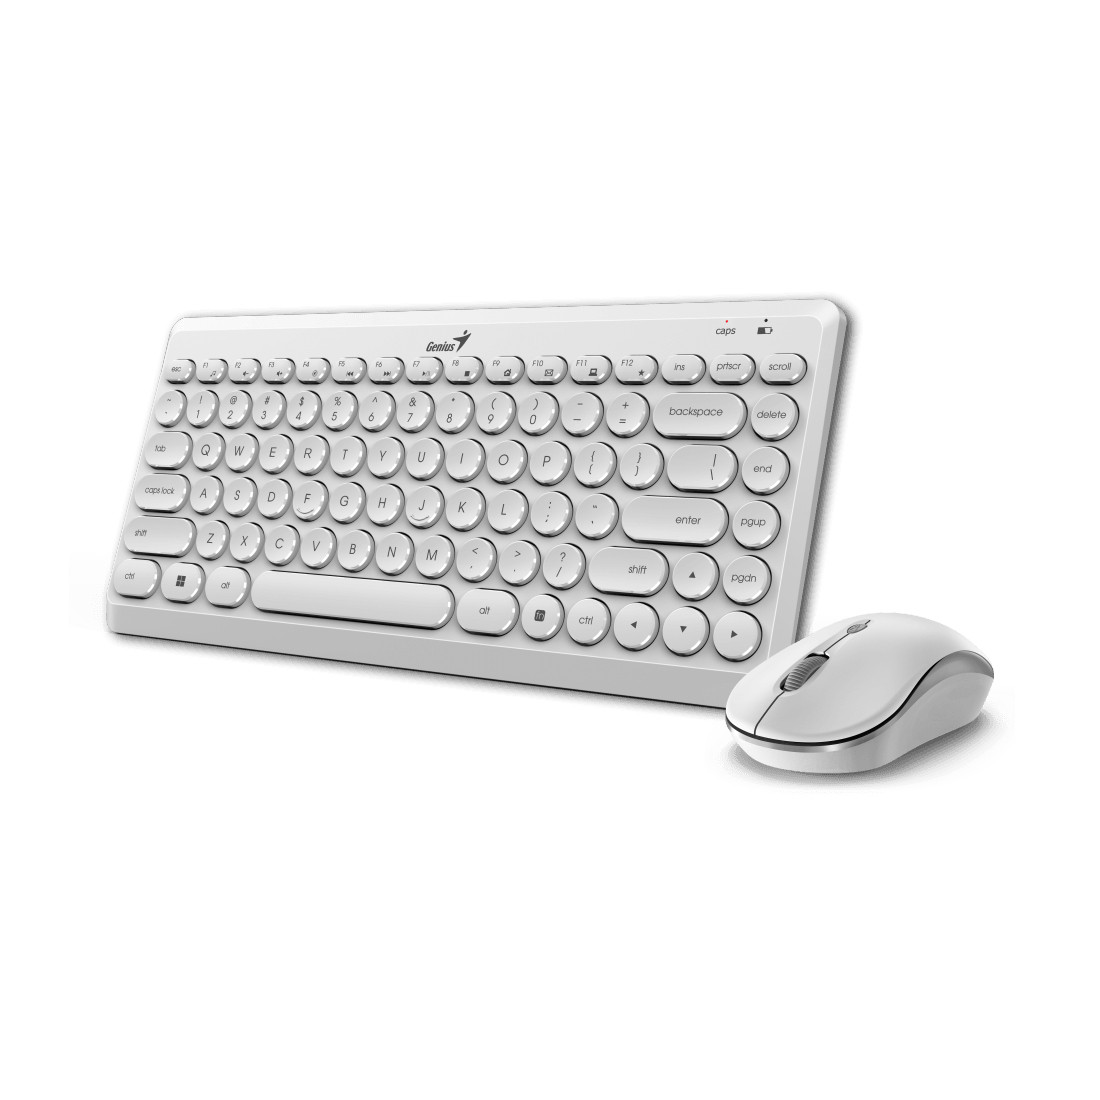 Комплект Клавиатура + Мышь Genius Luxemate Q8000 White, фото 1